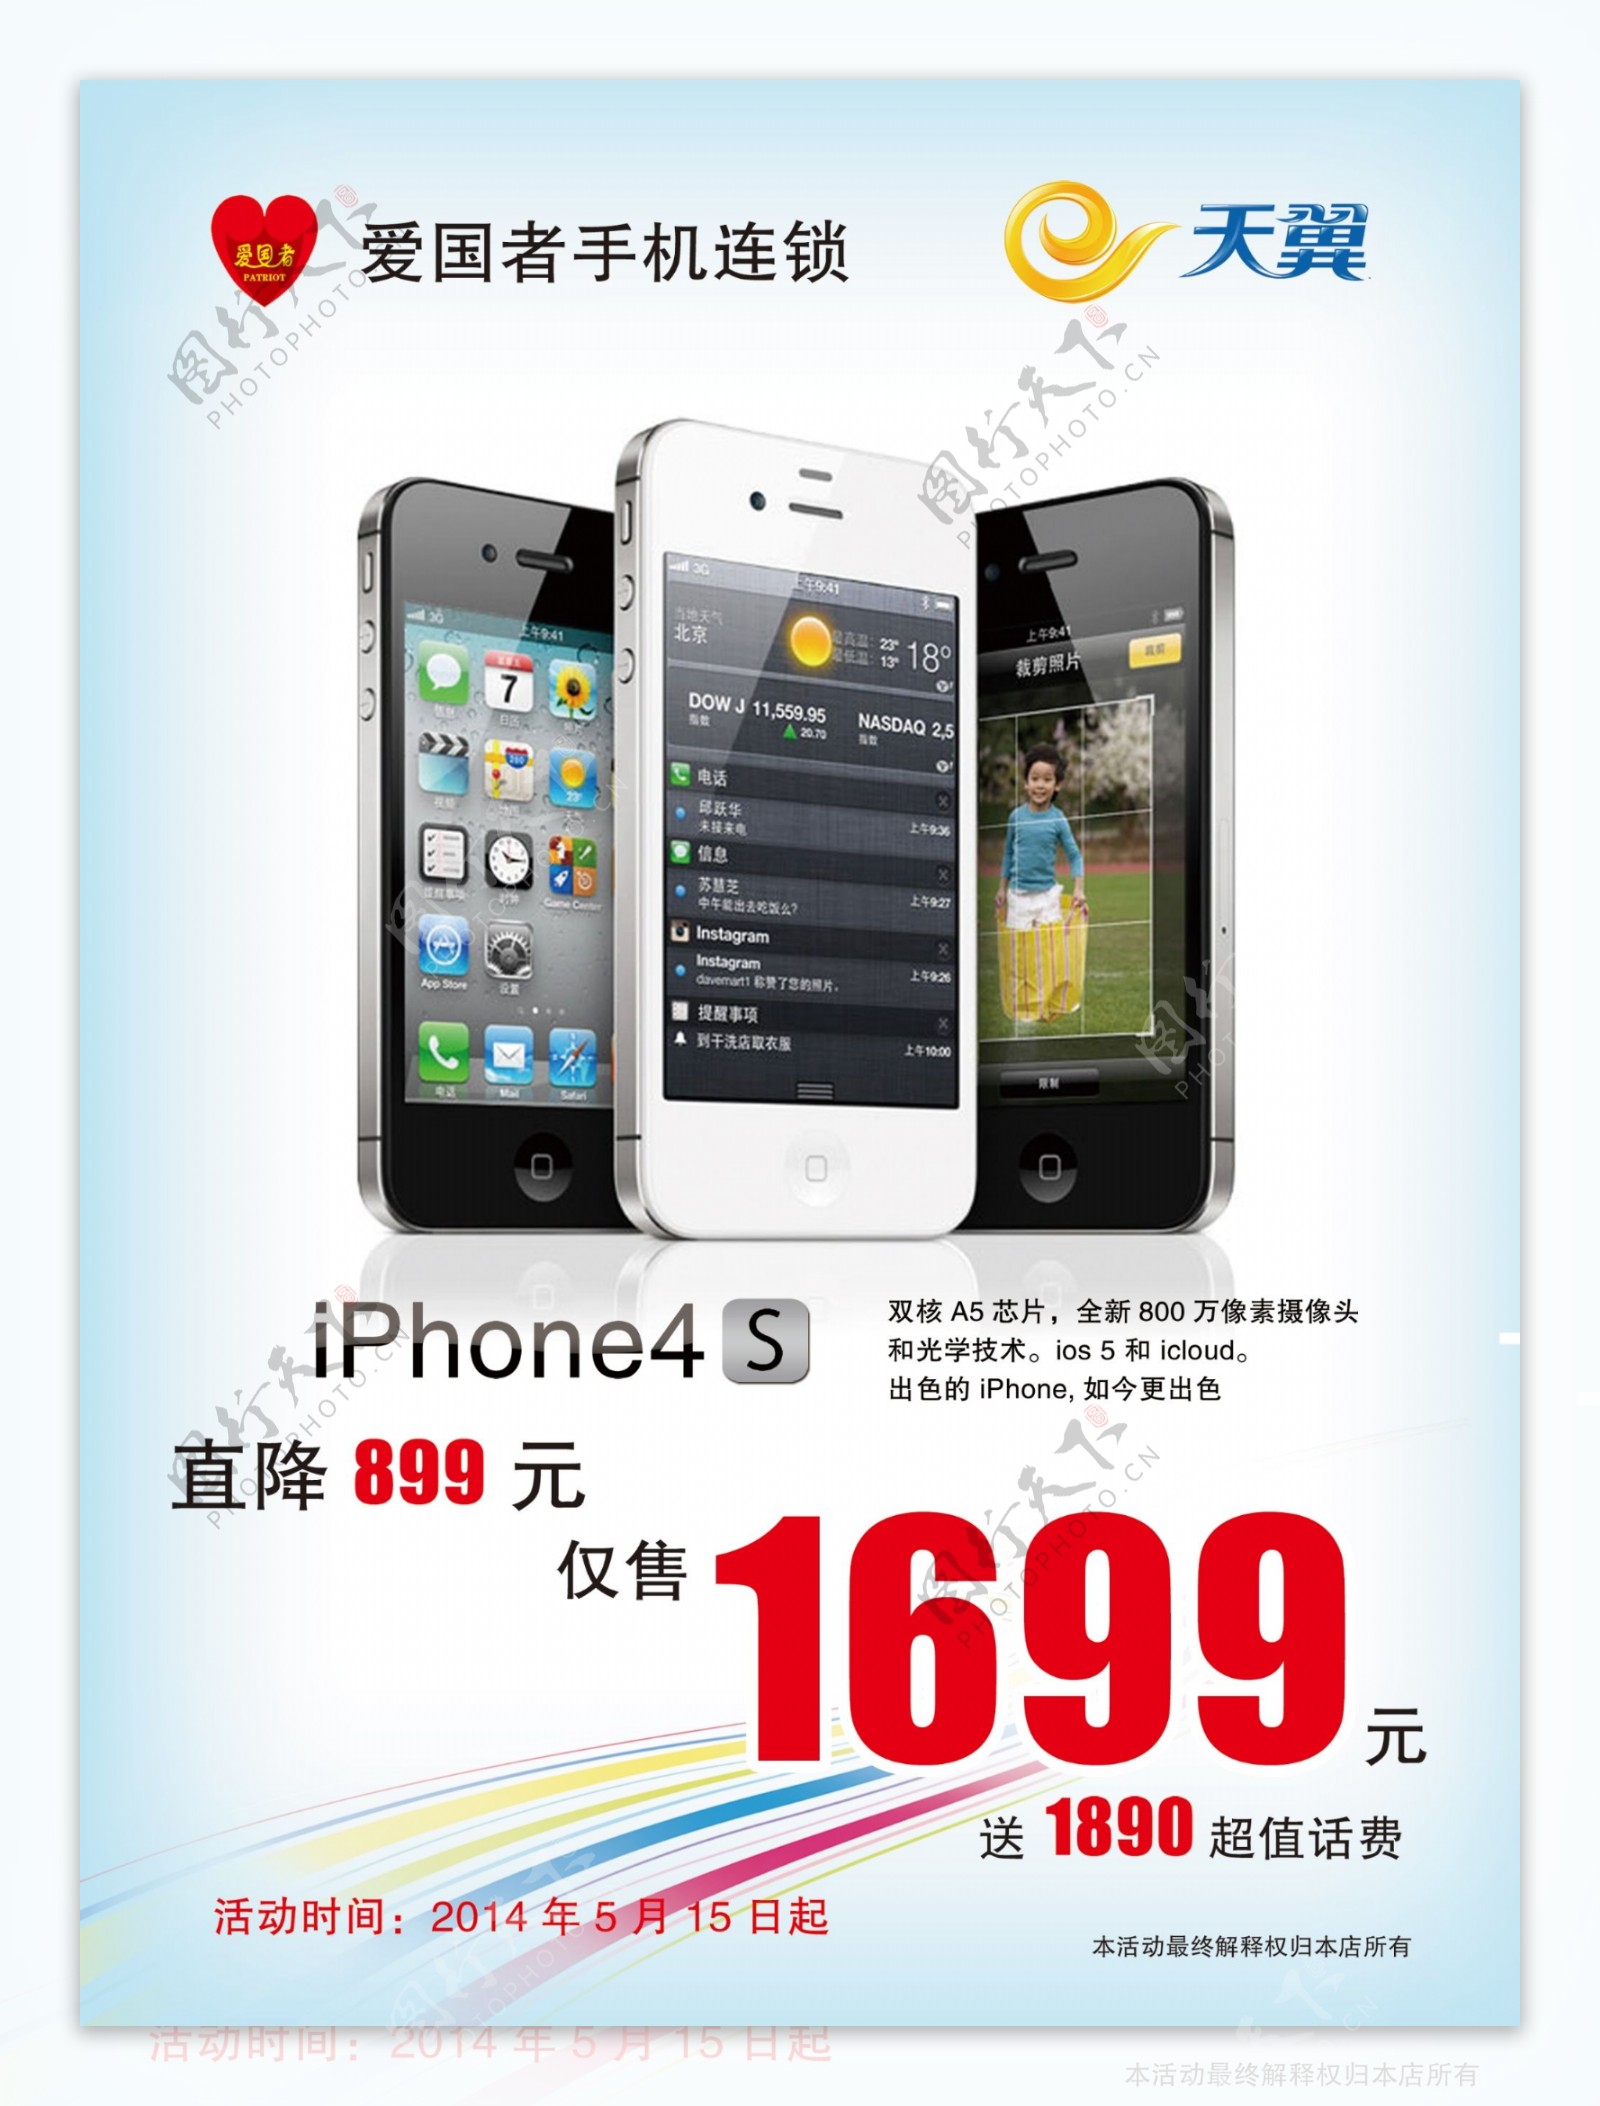 iphone4s大降价